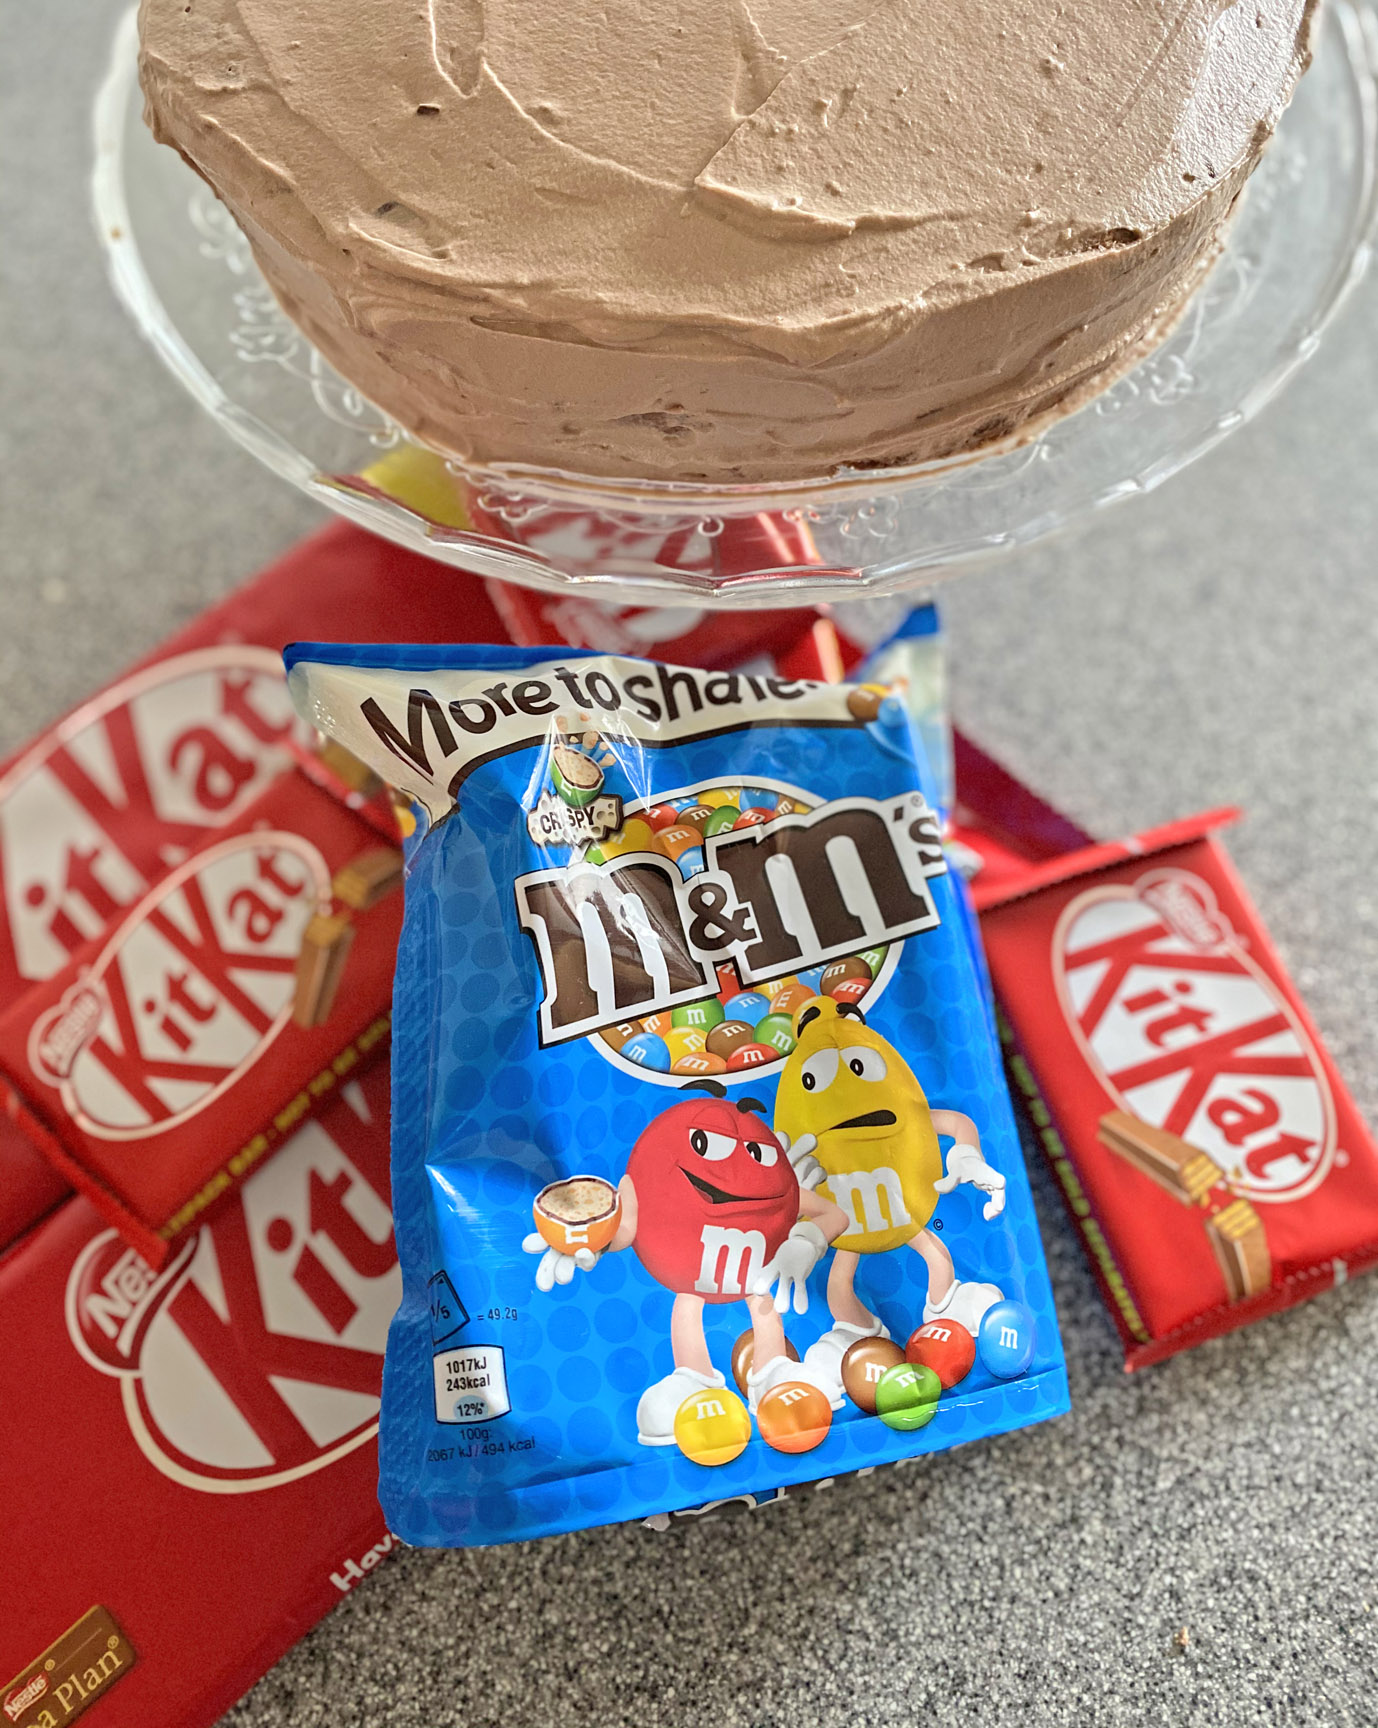 tort czekoladowy M&M's i KitKat by FASHION ART MEDIA